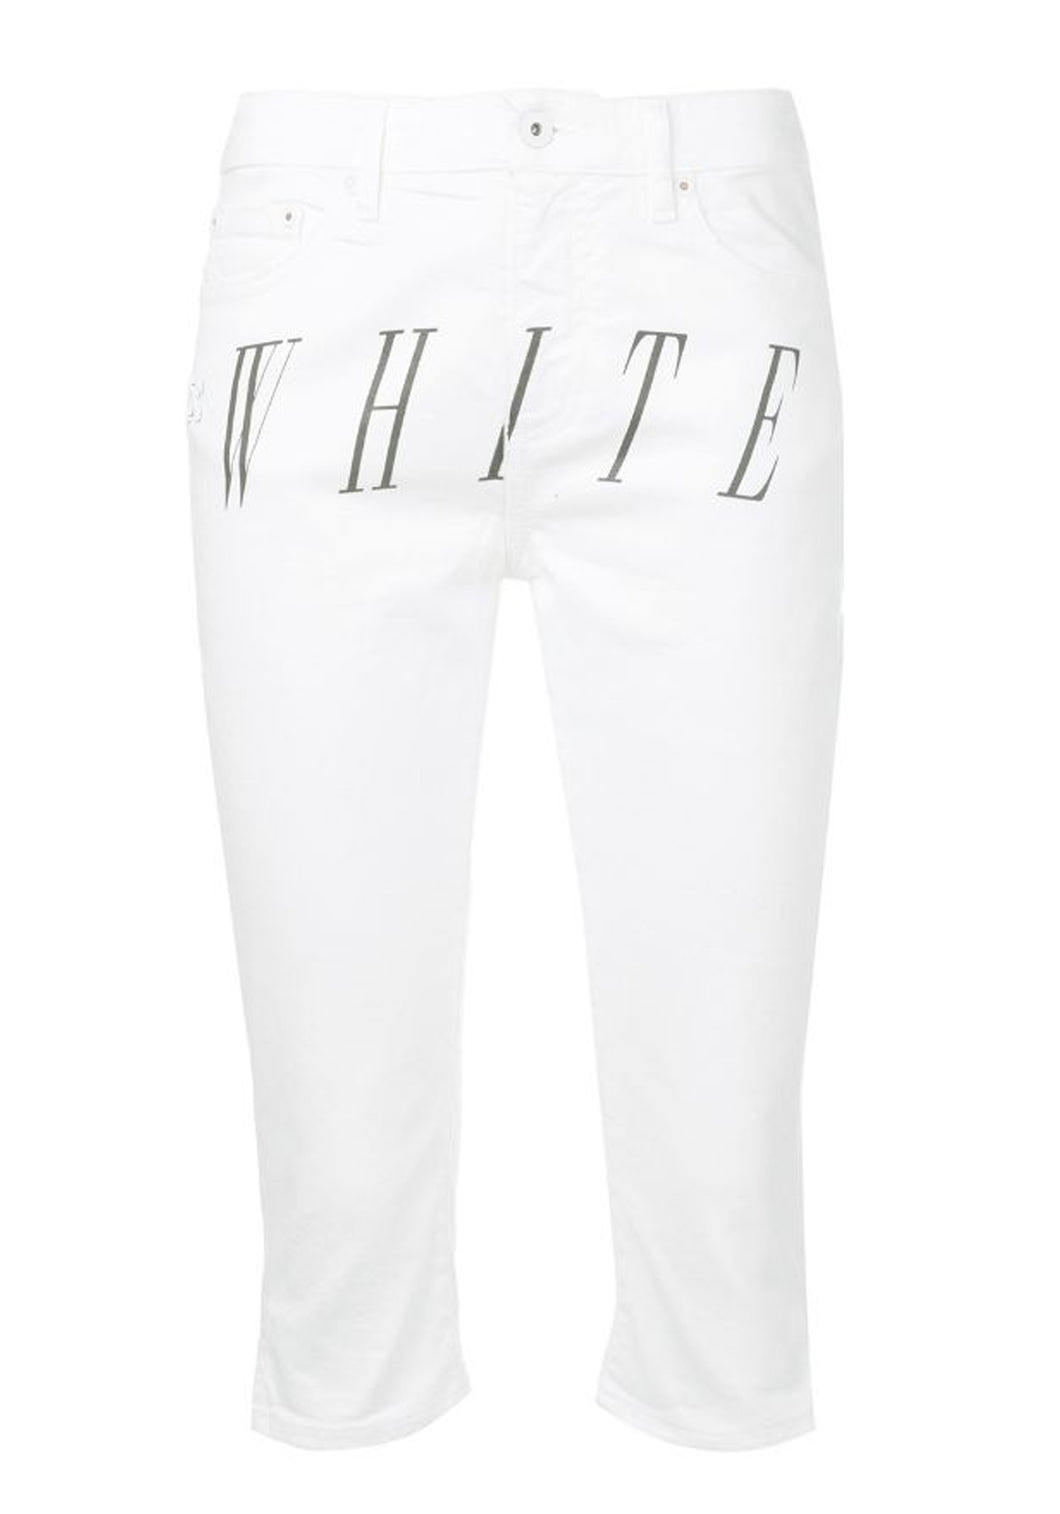 Off White Damen Hose | Pants White Cropped Capri Pants | OWYA009S197130460110